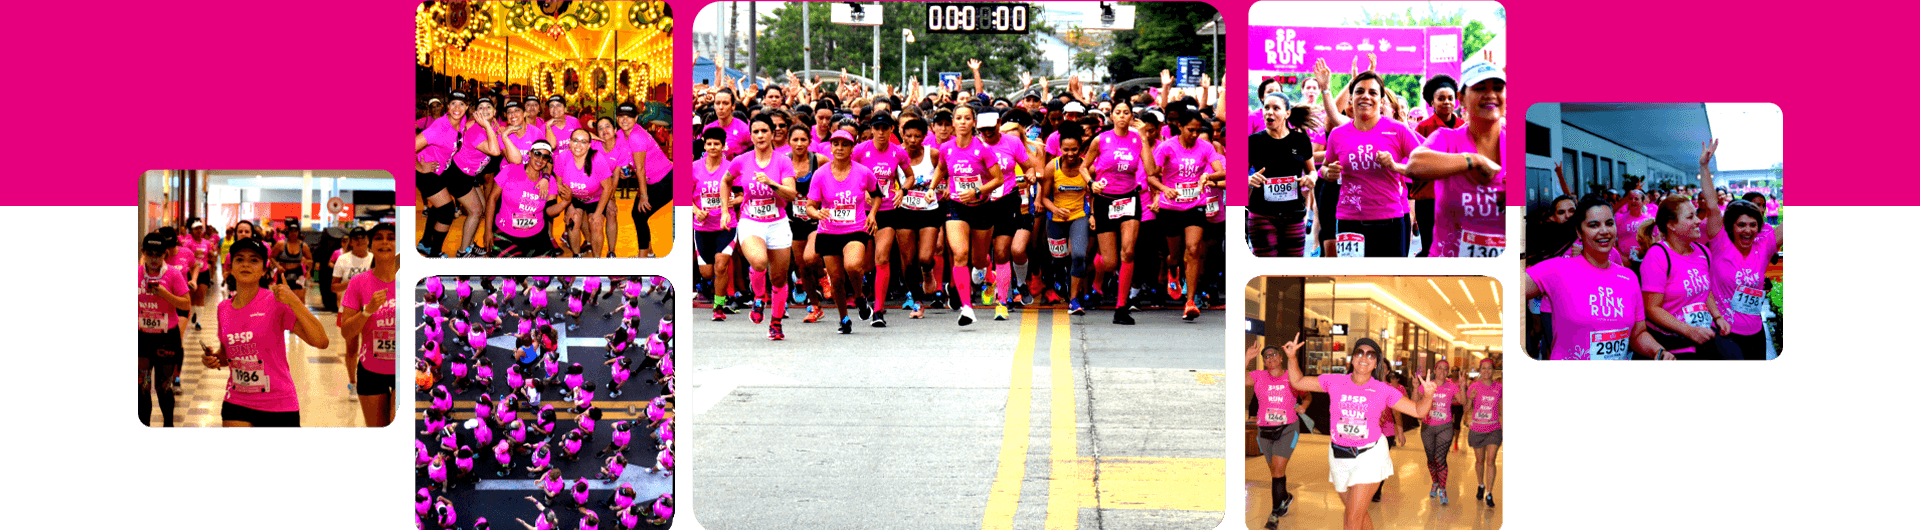 5º Deca Runners e Squad Javali - avenida Paulista - Outubro Rosa -  Esportividade - Guia de esporte de São Paulo e região